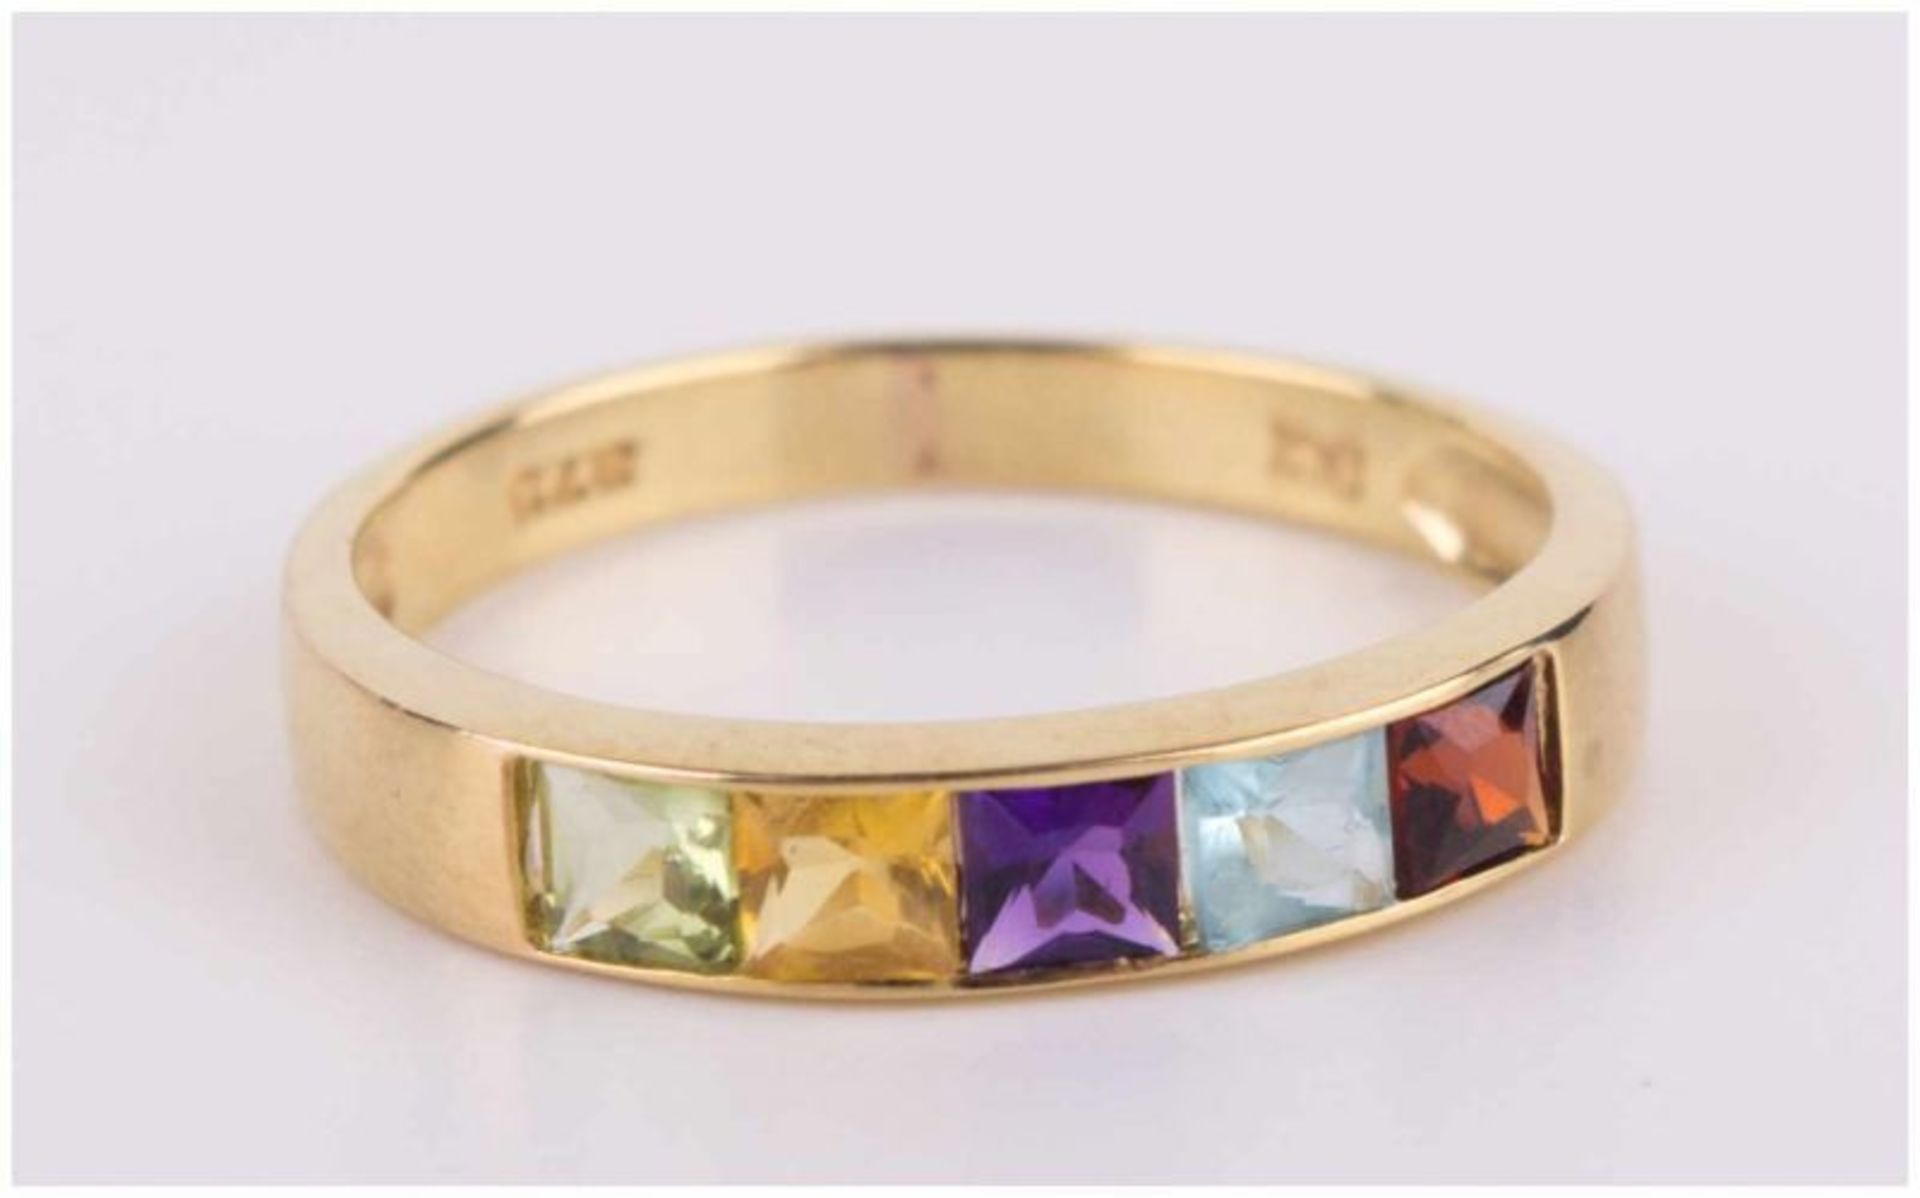 Granat-Amethist Ring / Garnet-Amethyst gold ring - GG 375/000, Gesamtgewicht ca. 1,8 [...] - Image 3 of 10